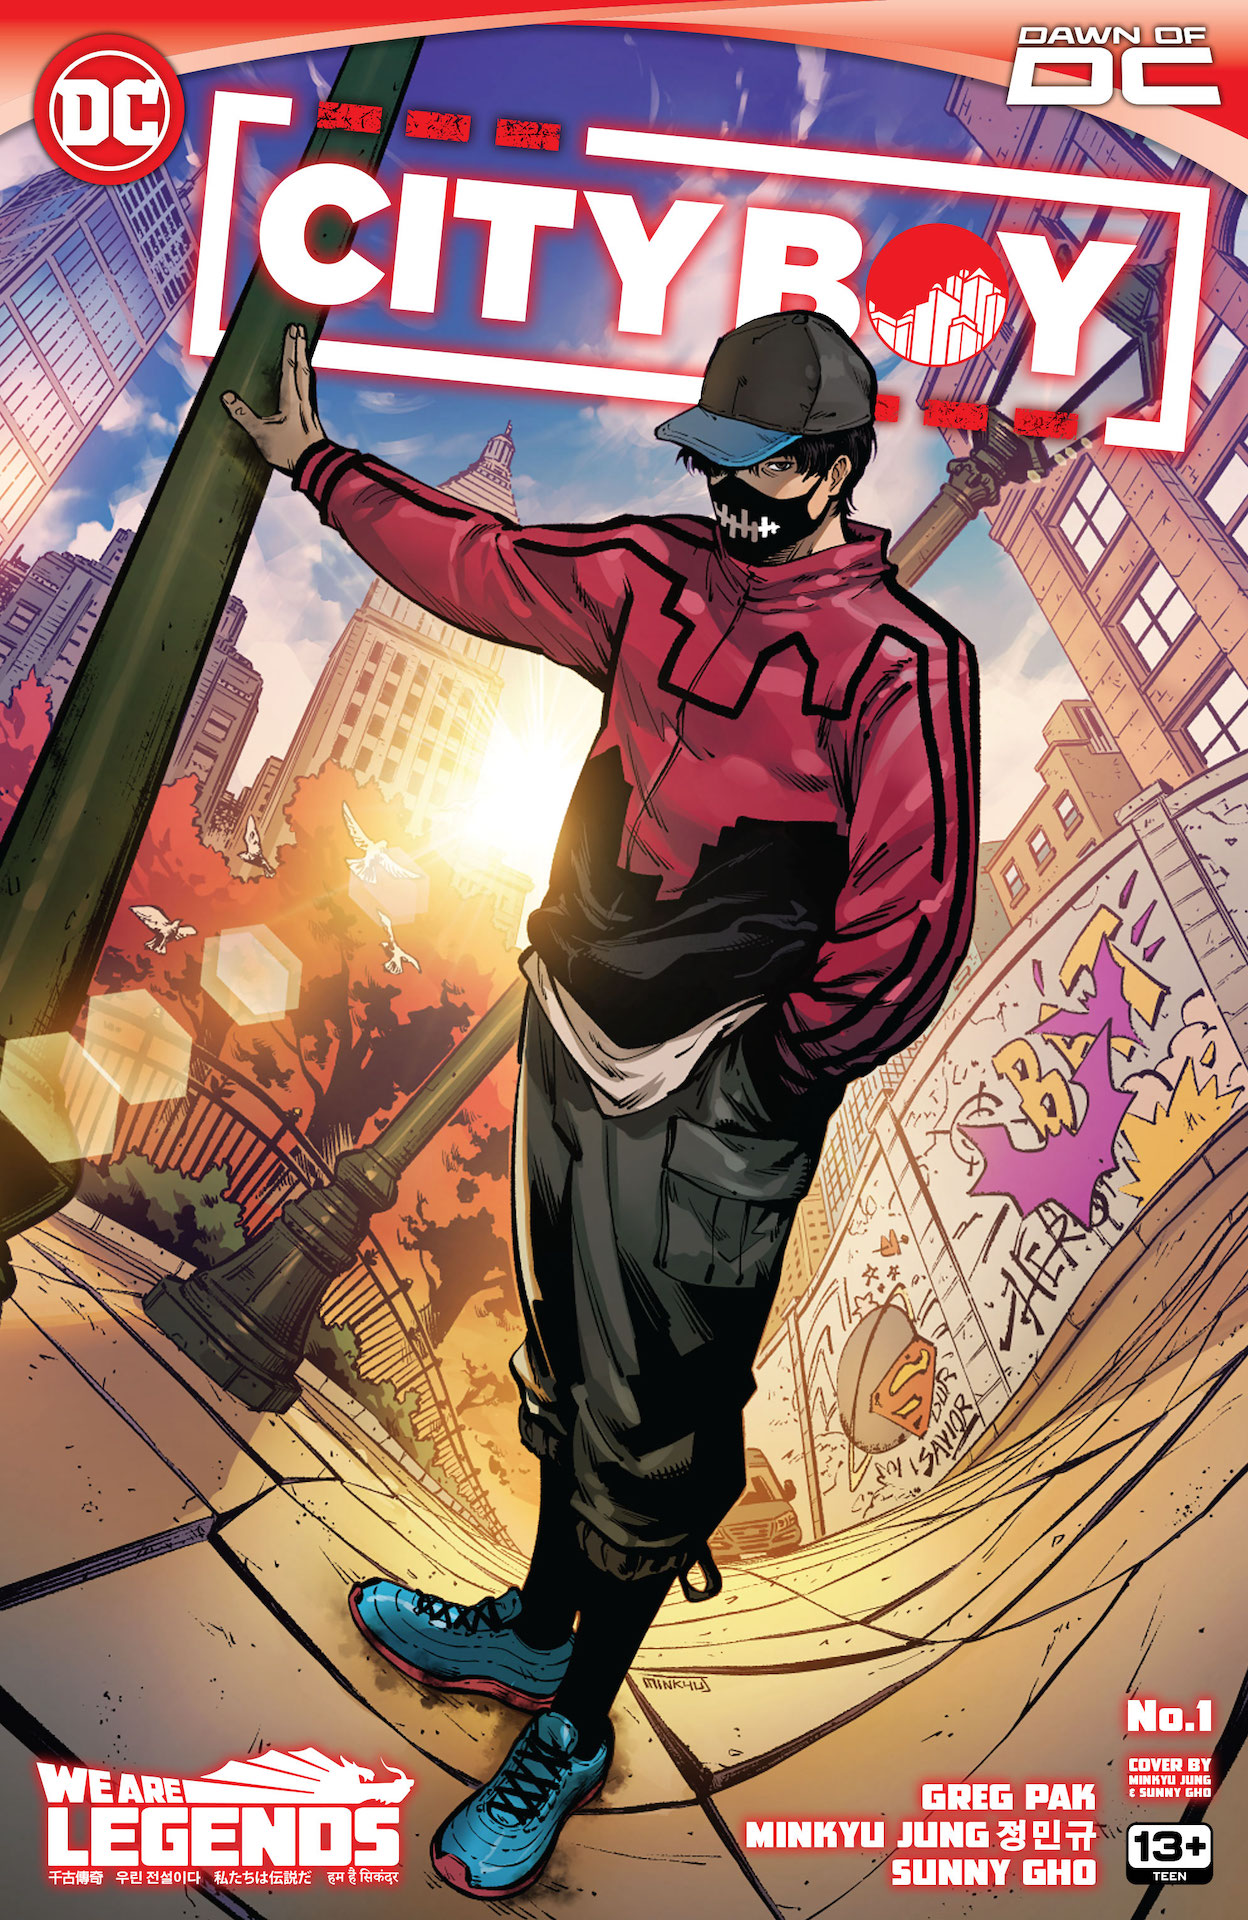 DC Preview: City Boy #1